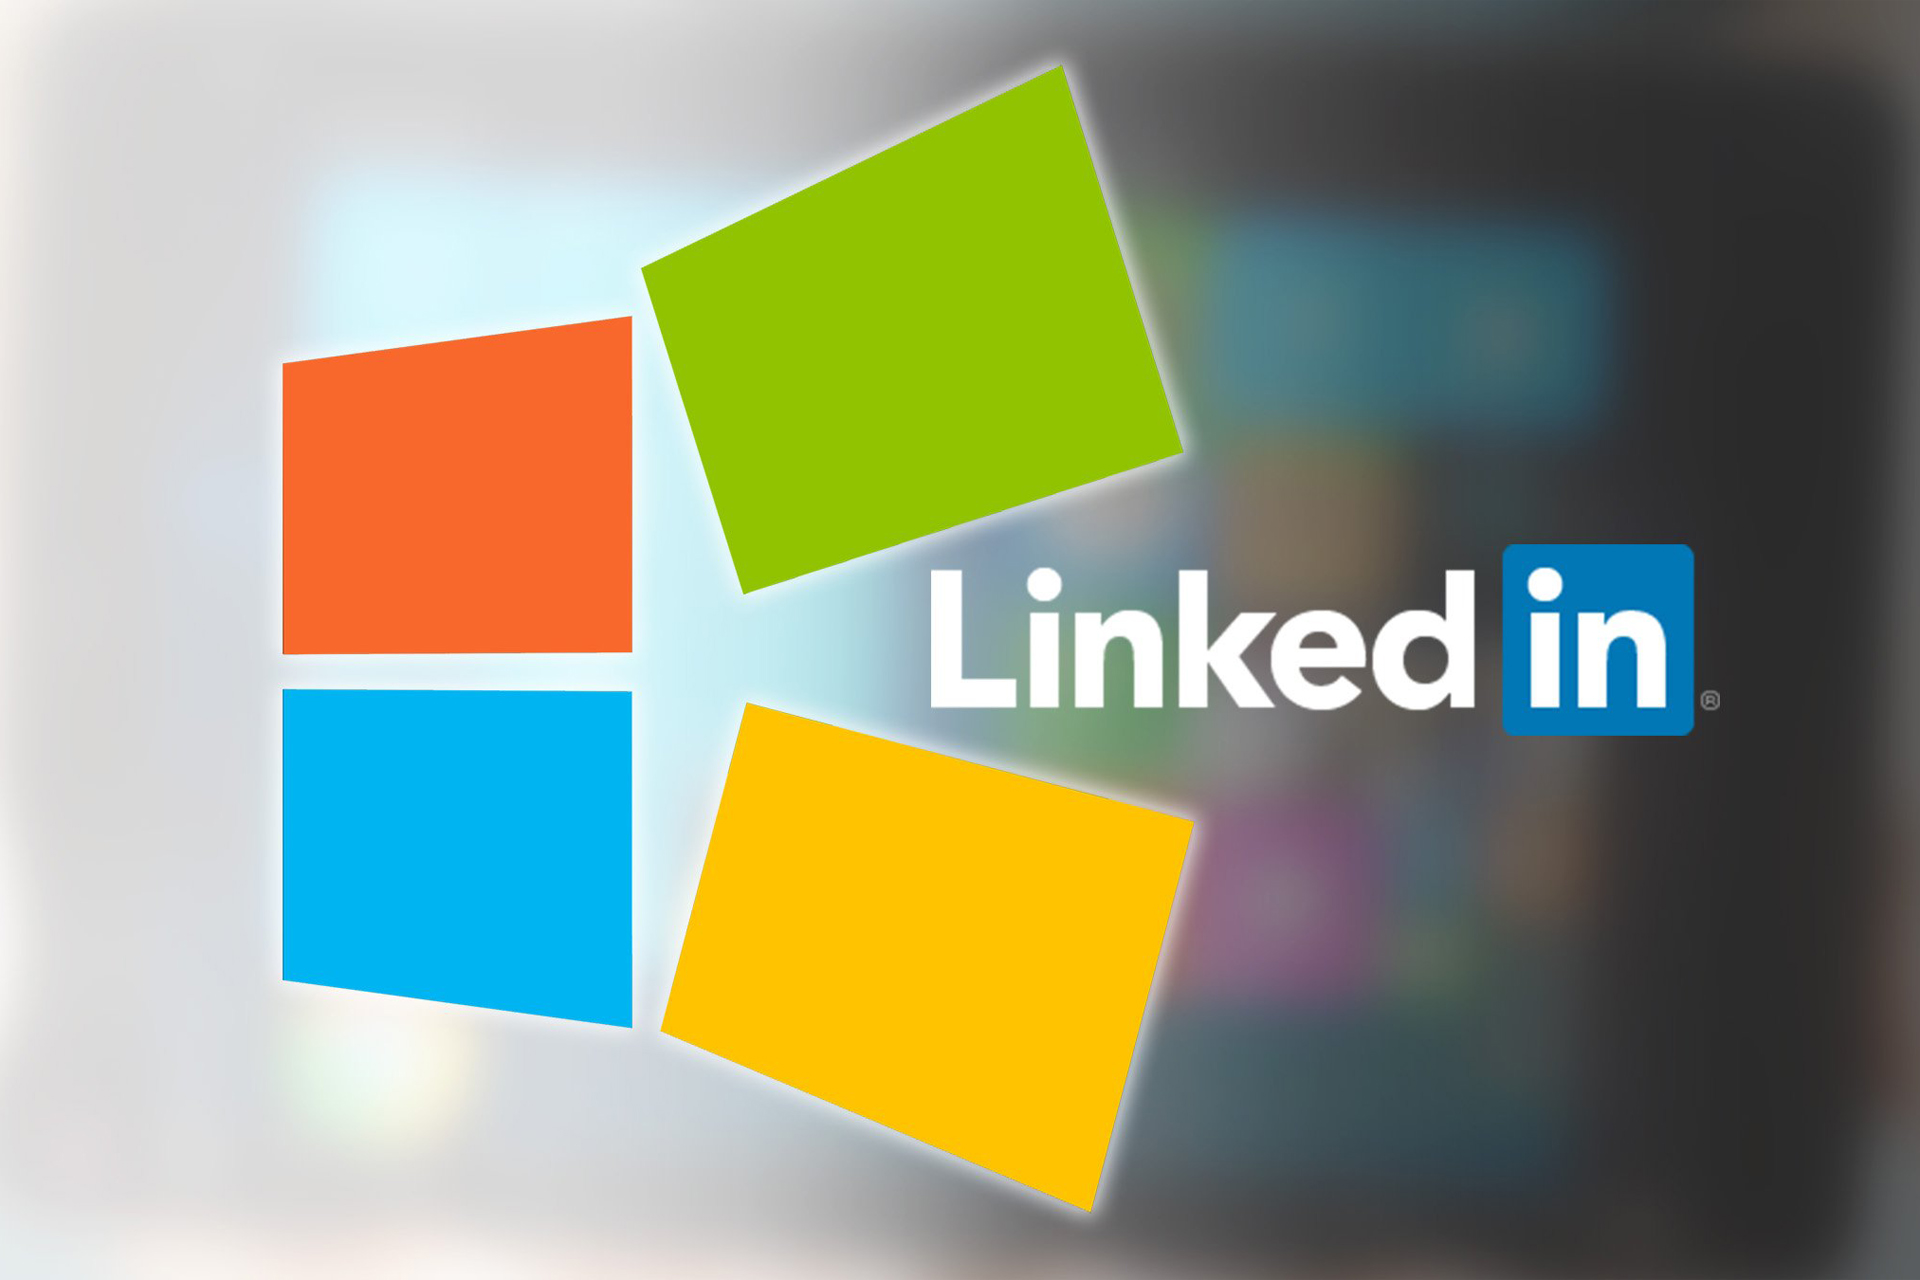 Microsoft купила деловую социальную сеть LinkedIn